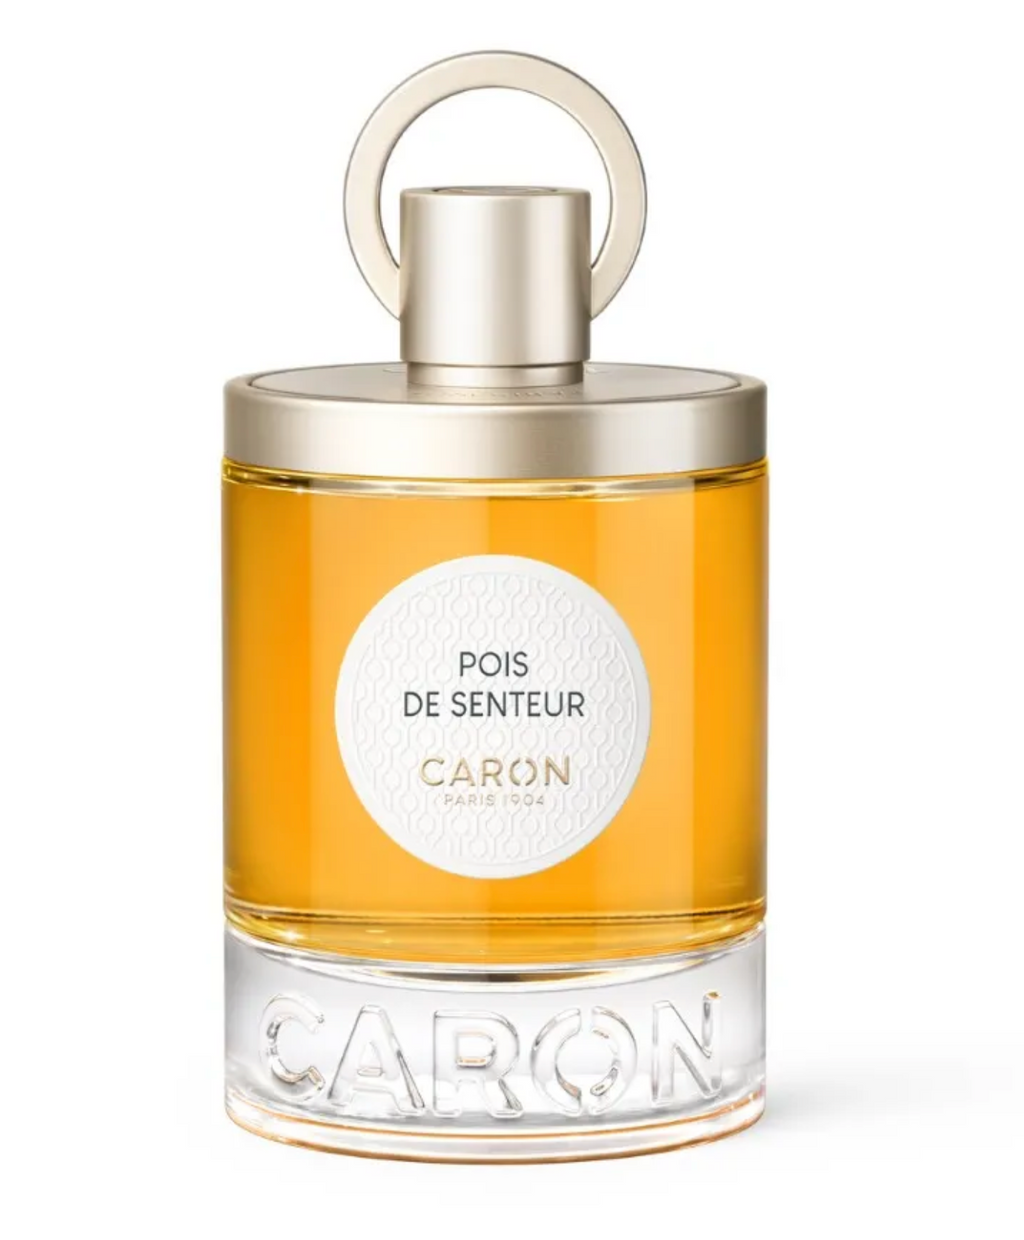 Caron Pois de senteur parfum 100ml refillable spray